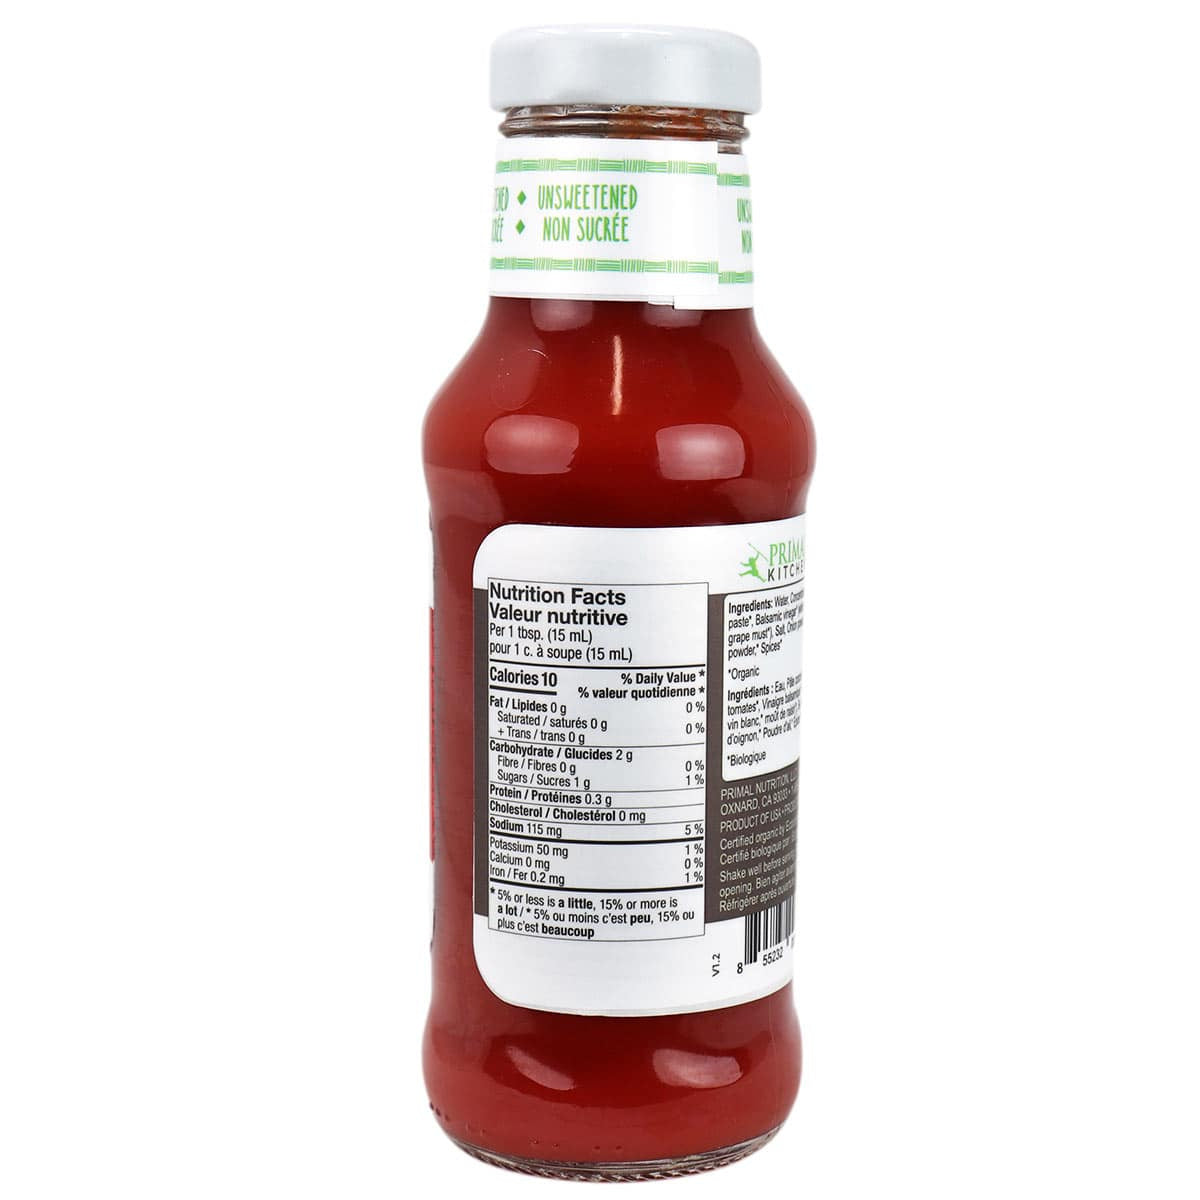 Primal Kitchen Organic Ketchup 300ml